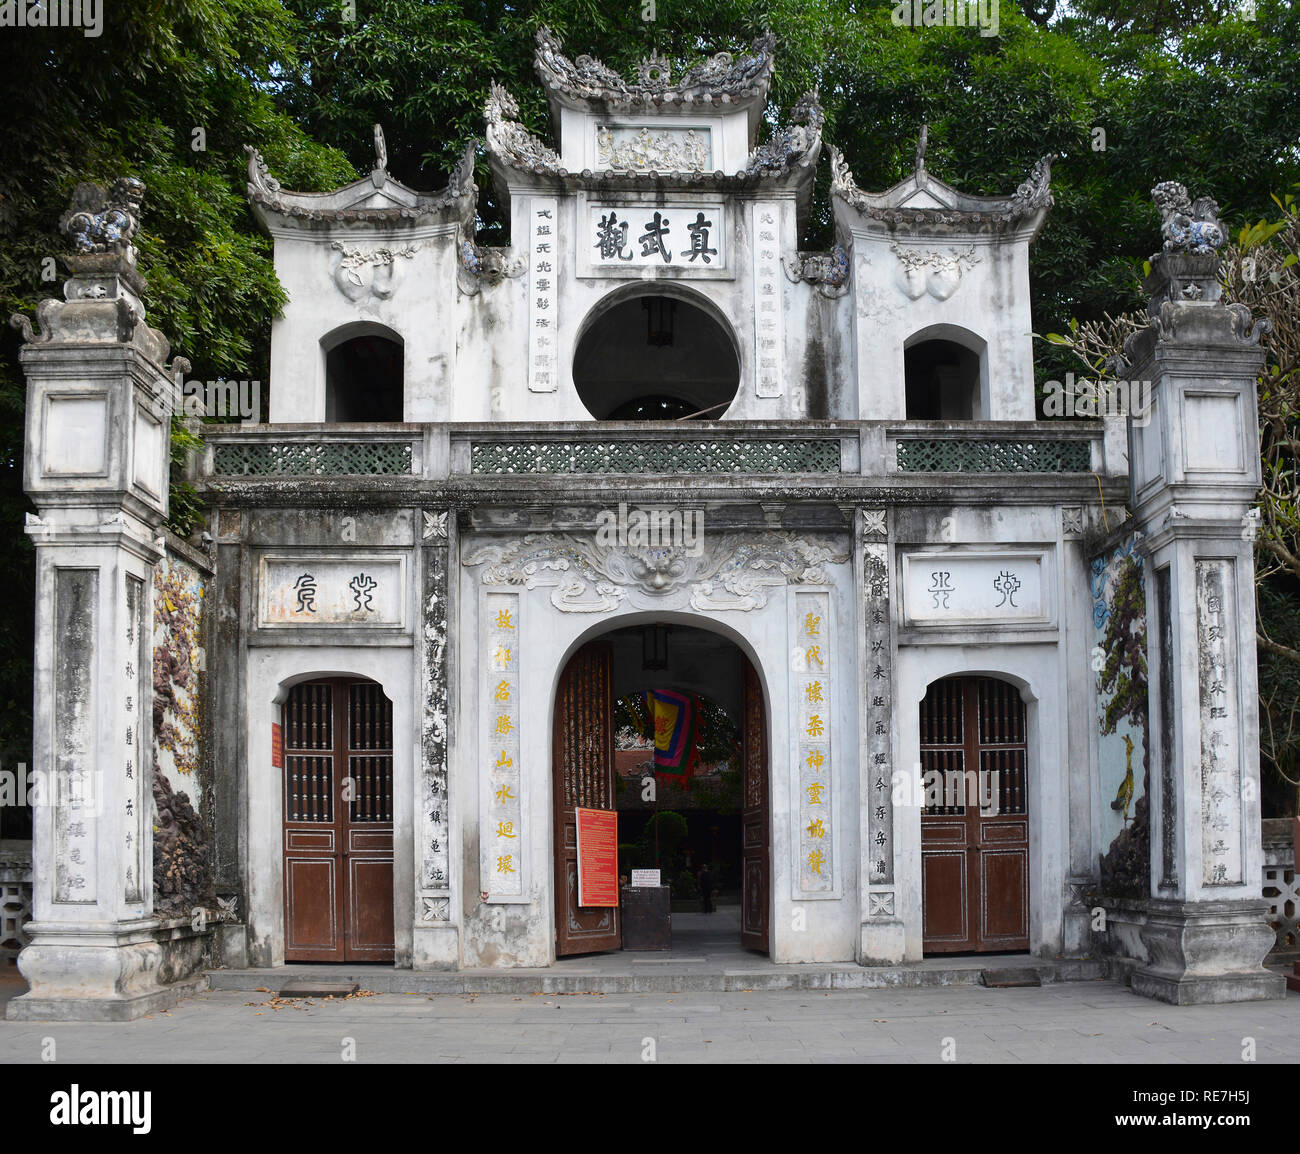 Hanoi, Vietnam - 16 décembre 2017. La porte devant le temple historique Quan Thanh dans le quartier de Ba Dinh à Hanoi, Vietnam. Le temple Banque D'Images